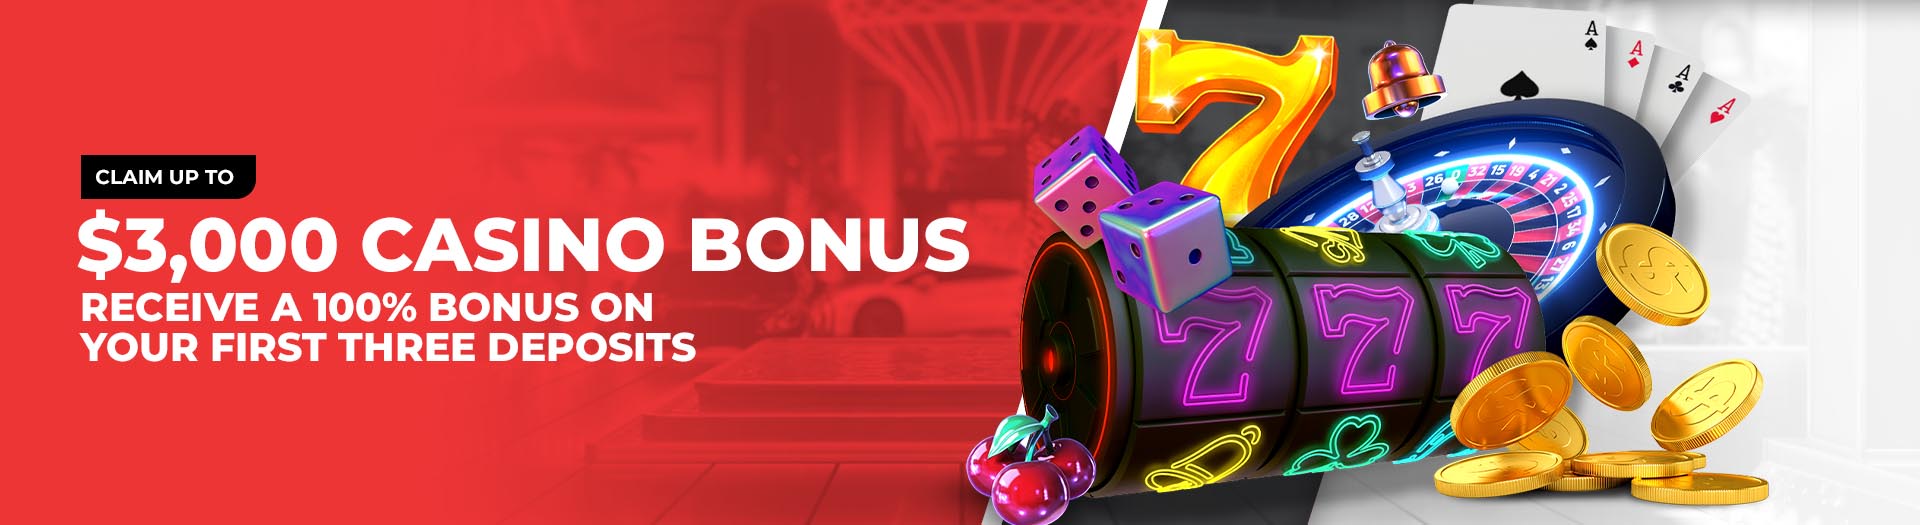 BetOnline 100% Casino Welcome Bonus